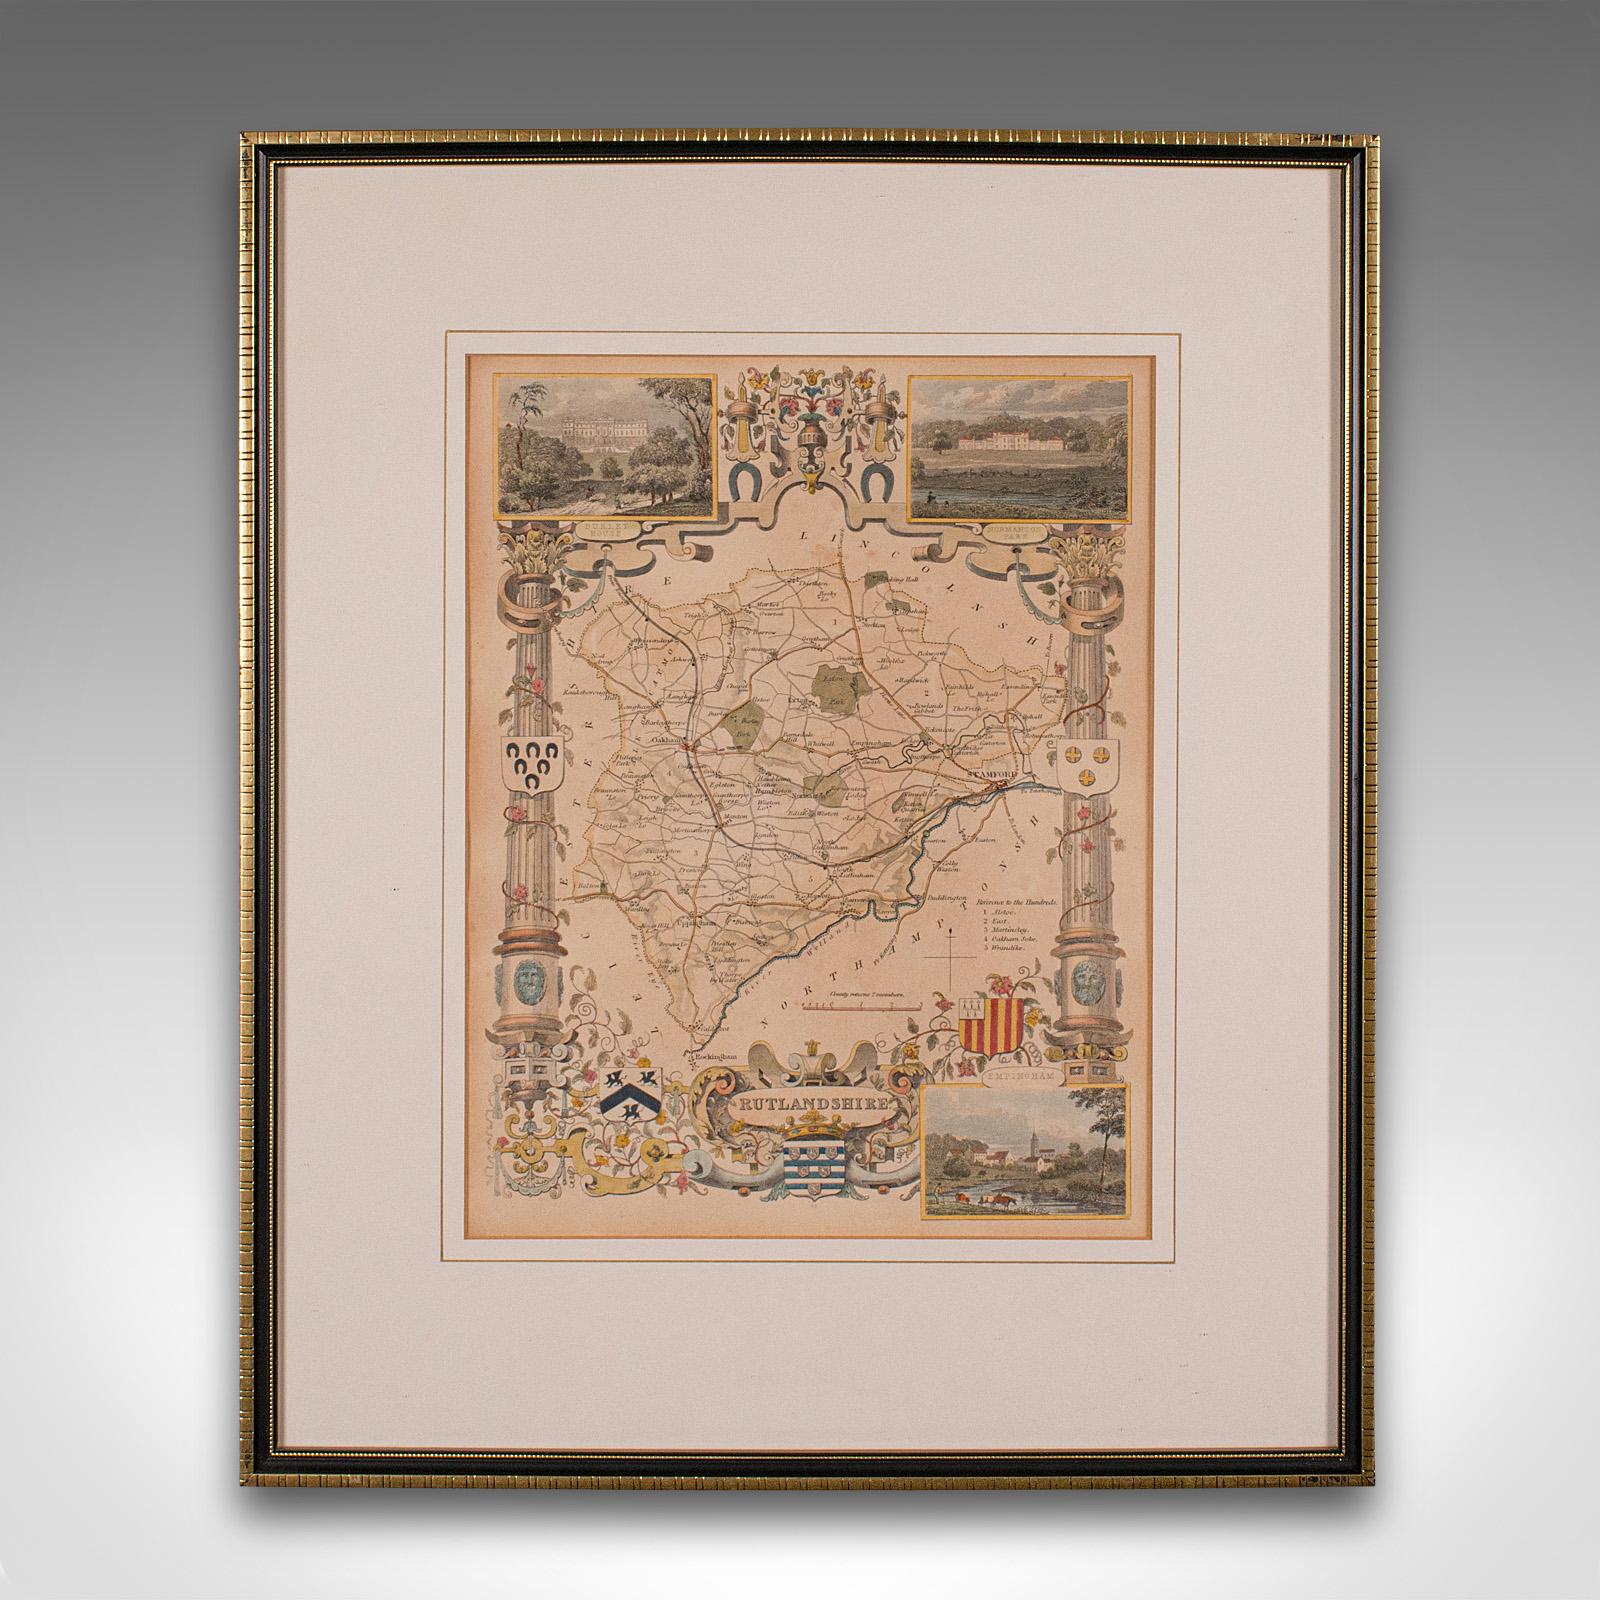 Il s'agit d'une carte lithographique ancienne du Rutlandshire. Gravure d'atlas anglaise encadrée, d'intérêt cartographique, datant du milieu du XIXe siècle ou plus tard.

Superbe lithographie du Rutlandshire et des détails de son comté, parfaite